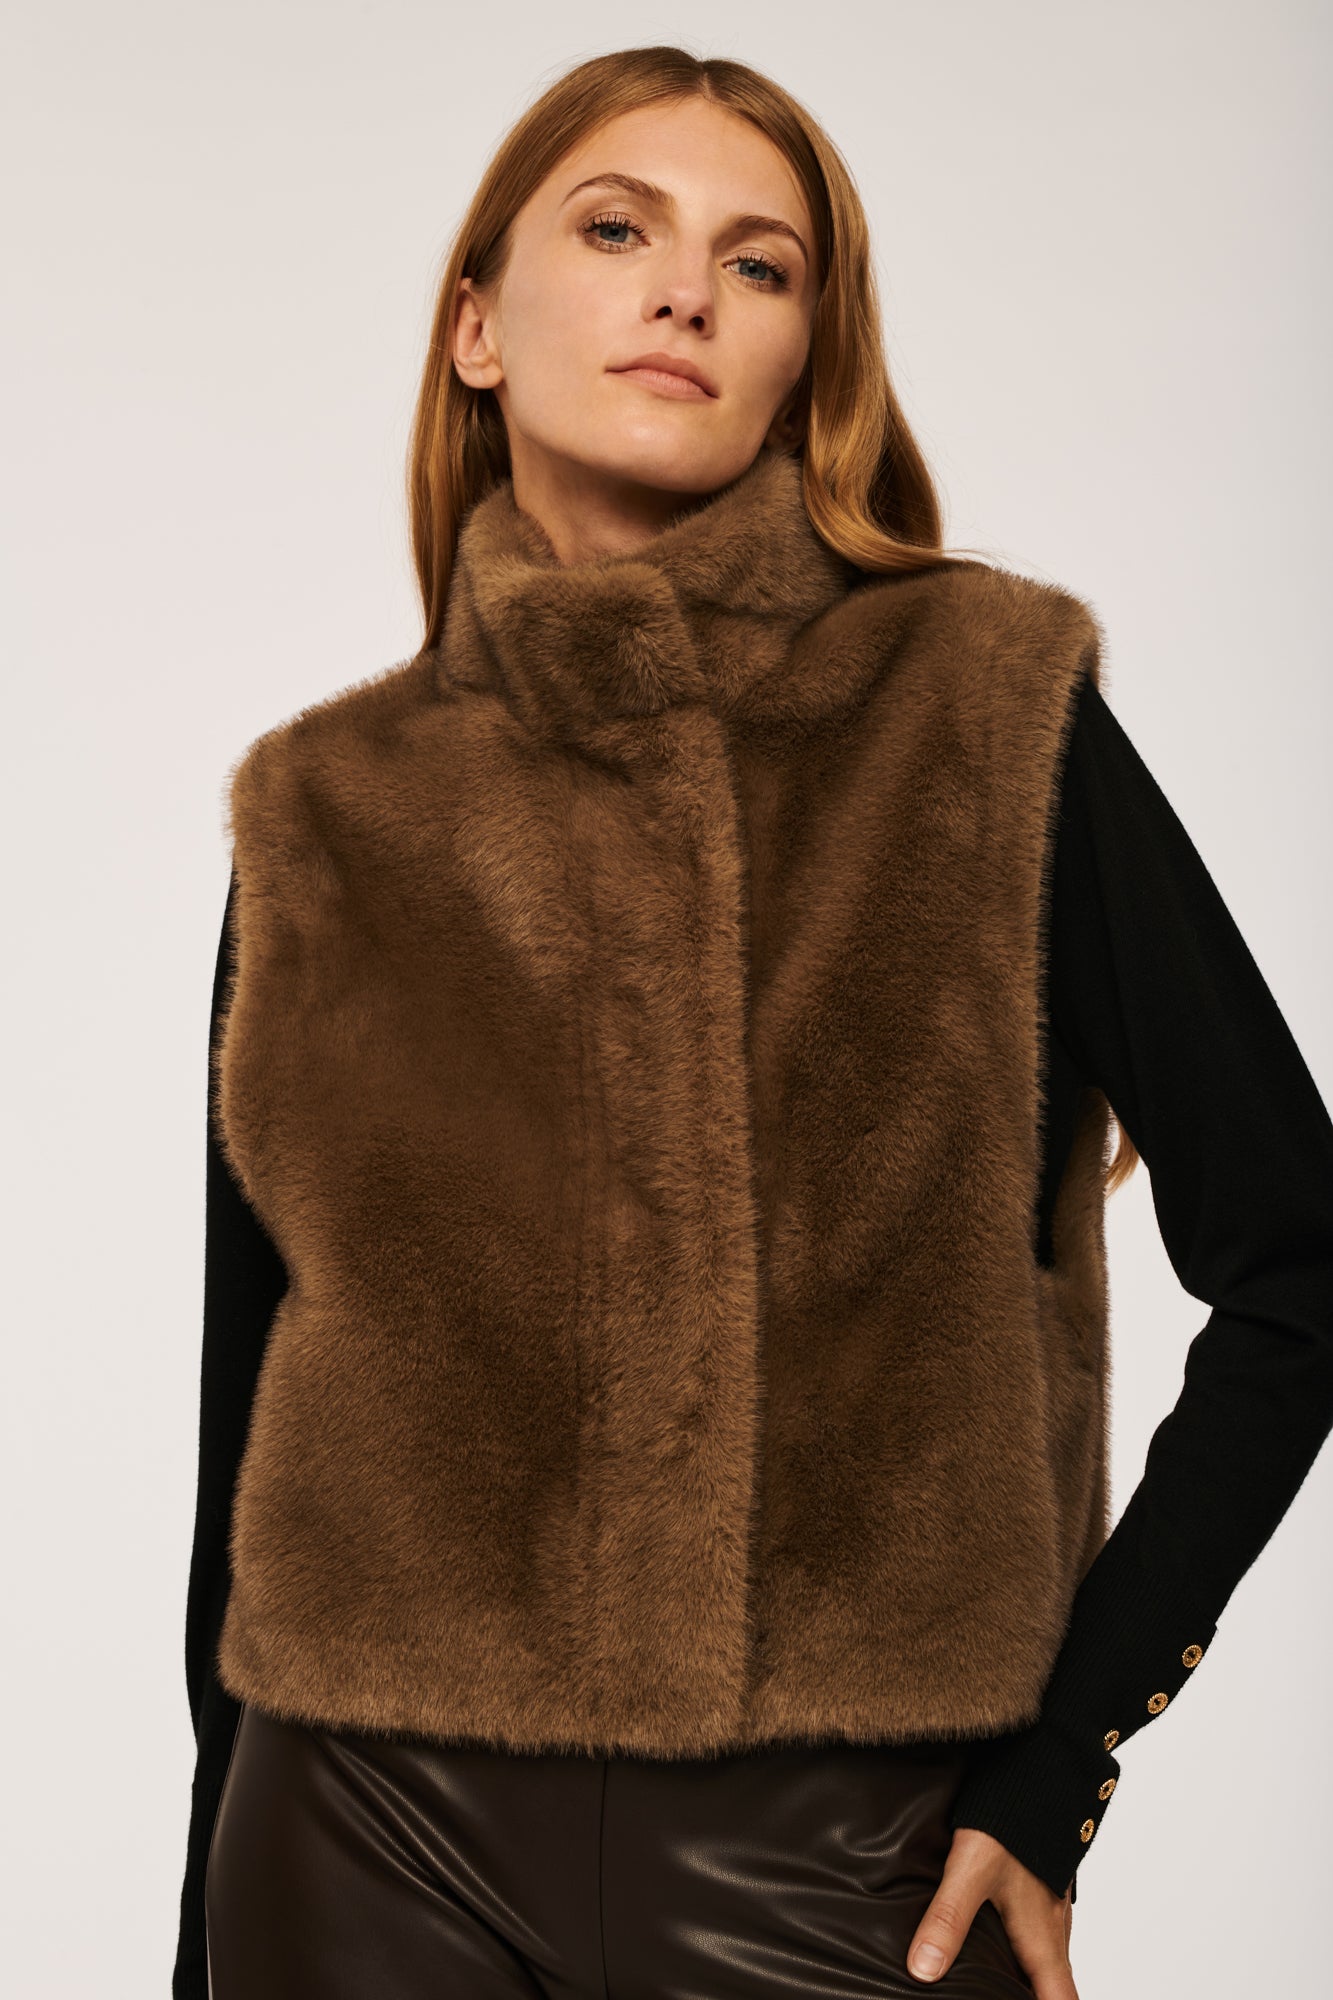 Women Faux Fur Jacket Coat Winter Warm Sleeveless Vest Waistcoat Gilet  Outwear | eBay